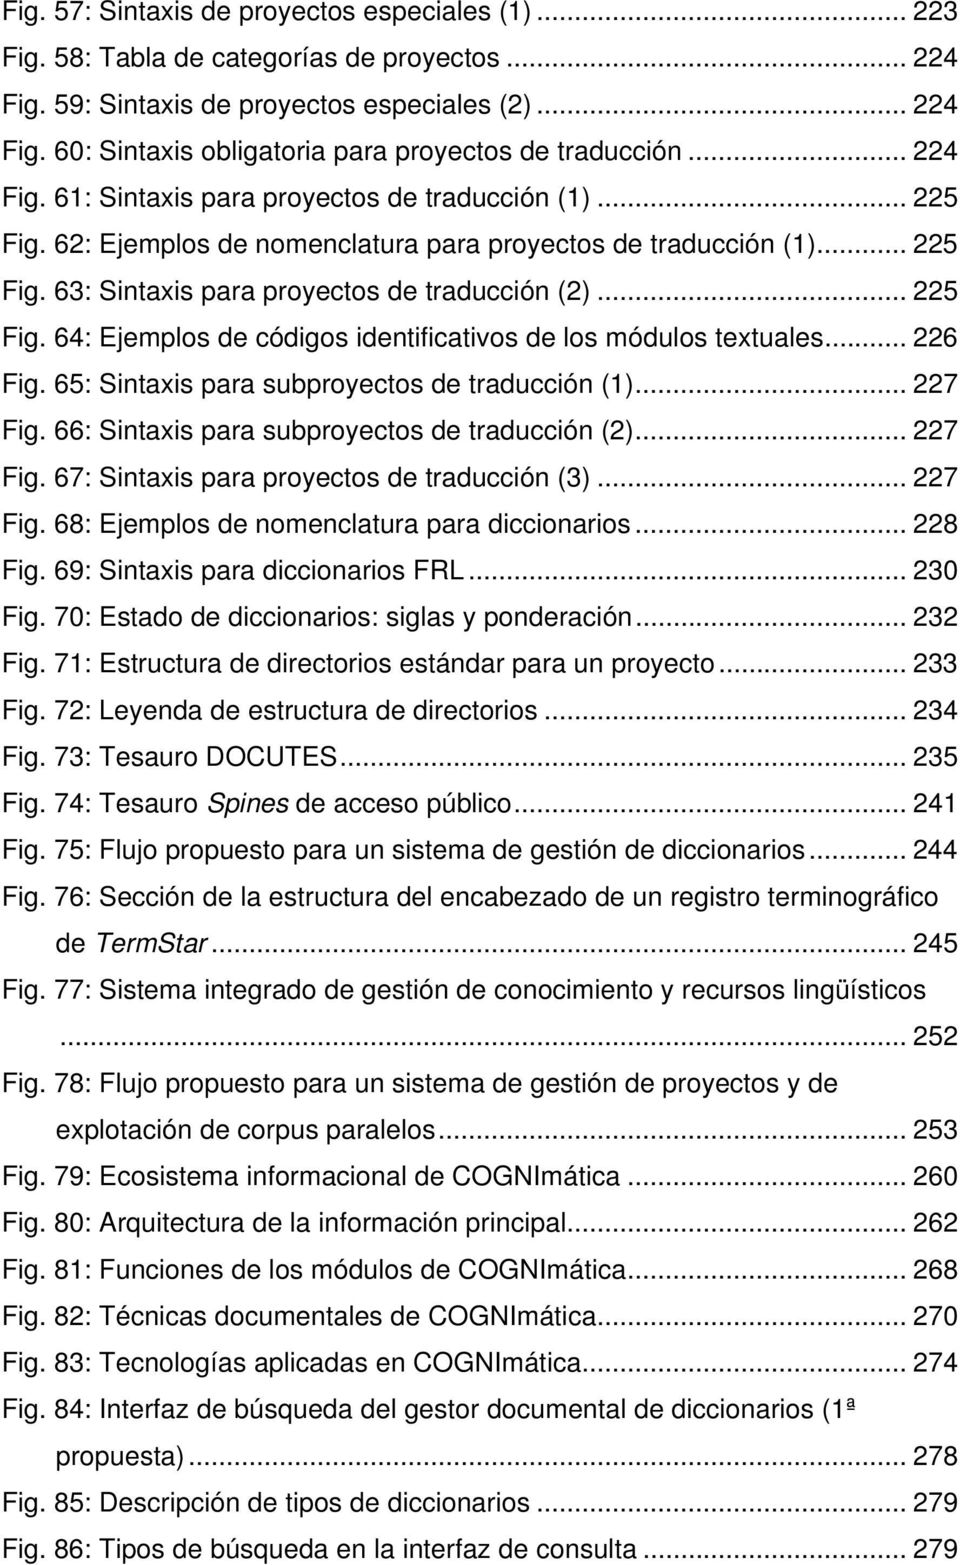 .. 226 Fig. 65: Sintaxis para subproyectos de traducción (1)... 227 Fig. 66: Sintaxis para subproyectos de traducción (2)... 227 Fig. 67: Sintaxis para proyectos de traducción (3)... 227 Fig. 68: Ejemplos de nomenclatura para diccionarios.